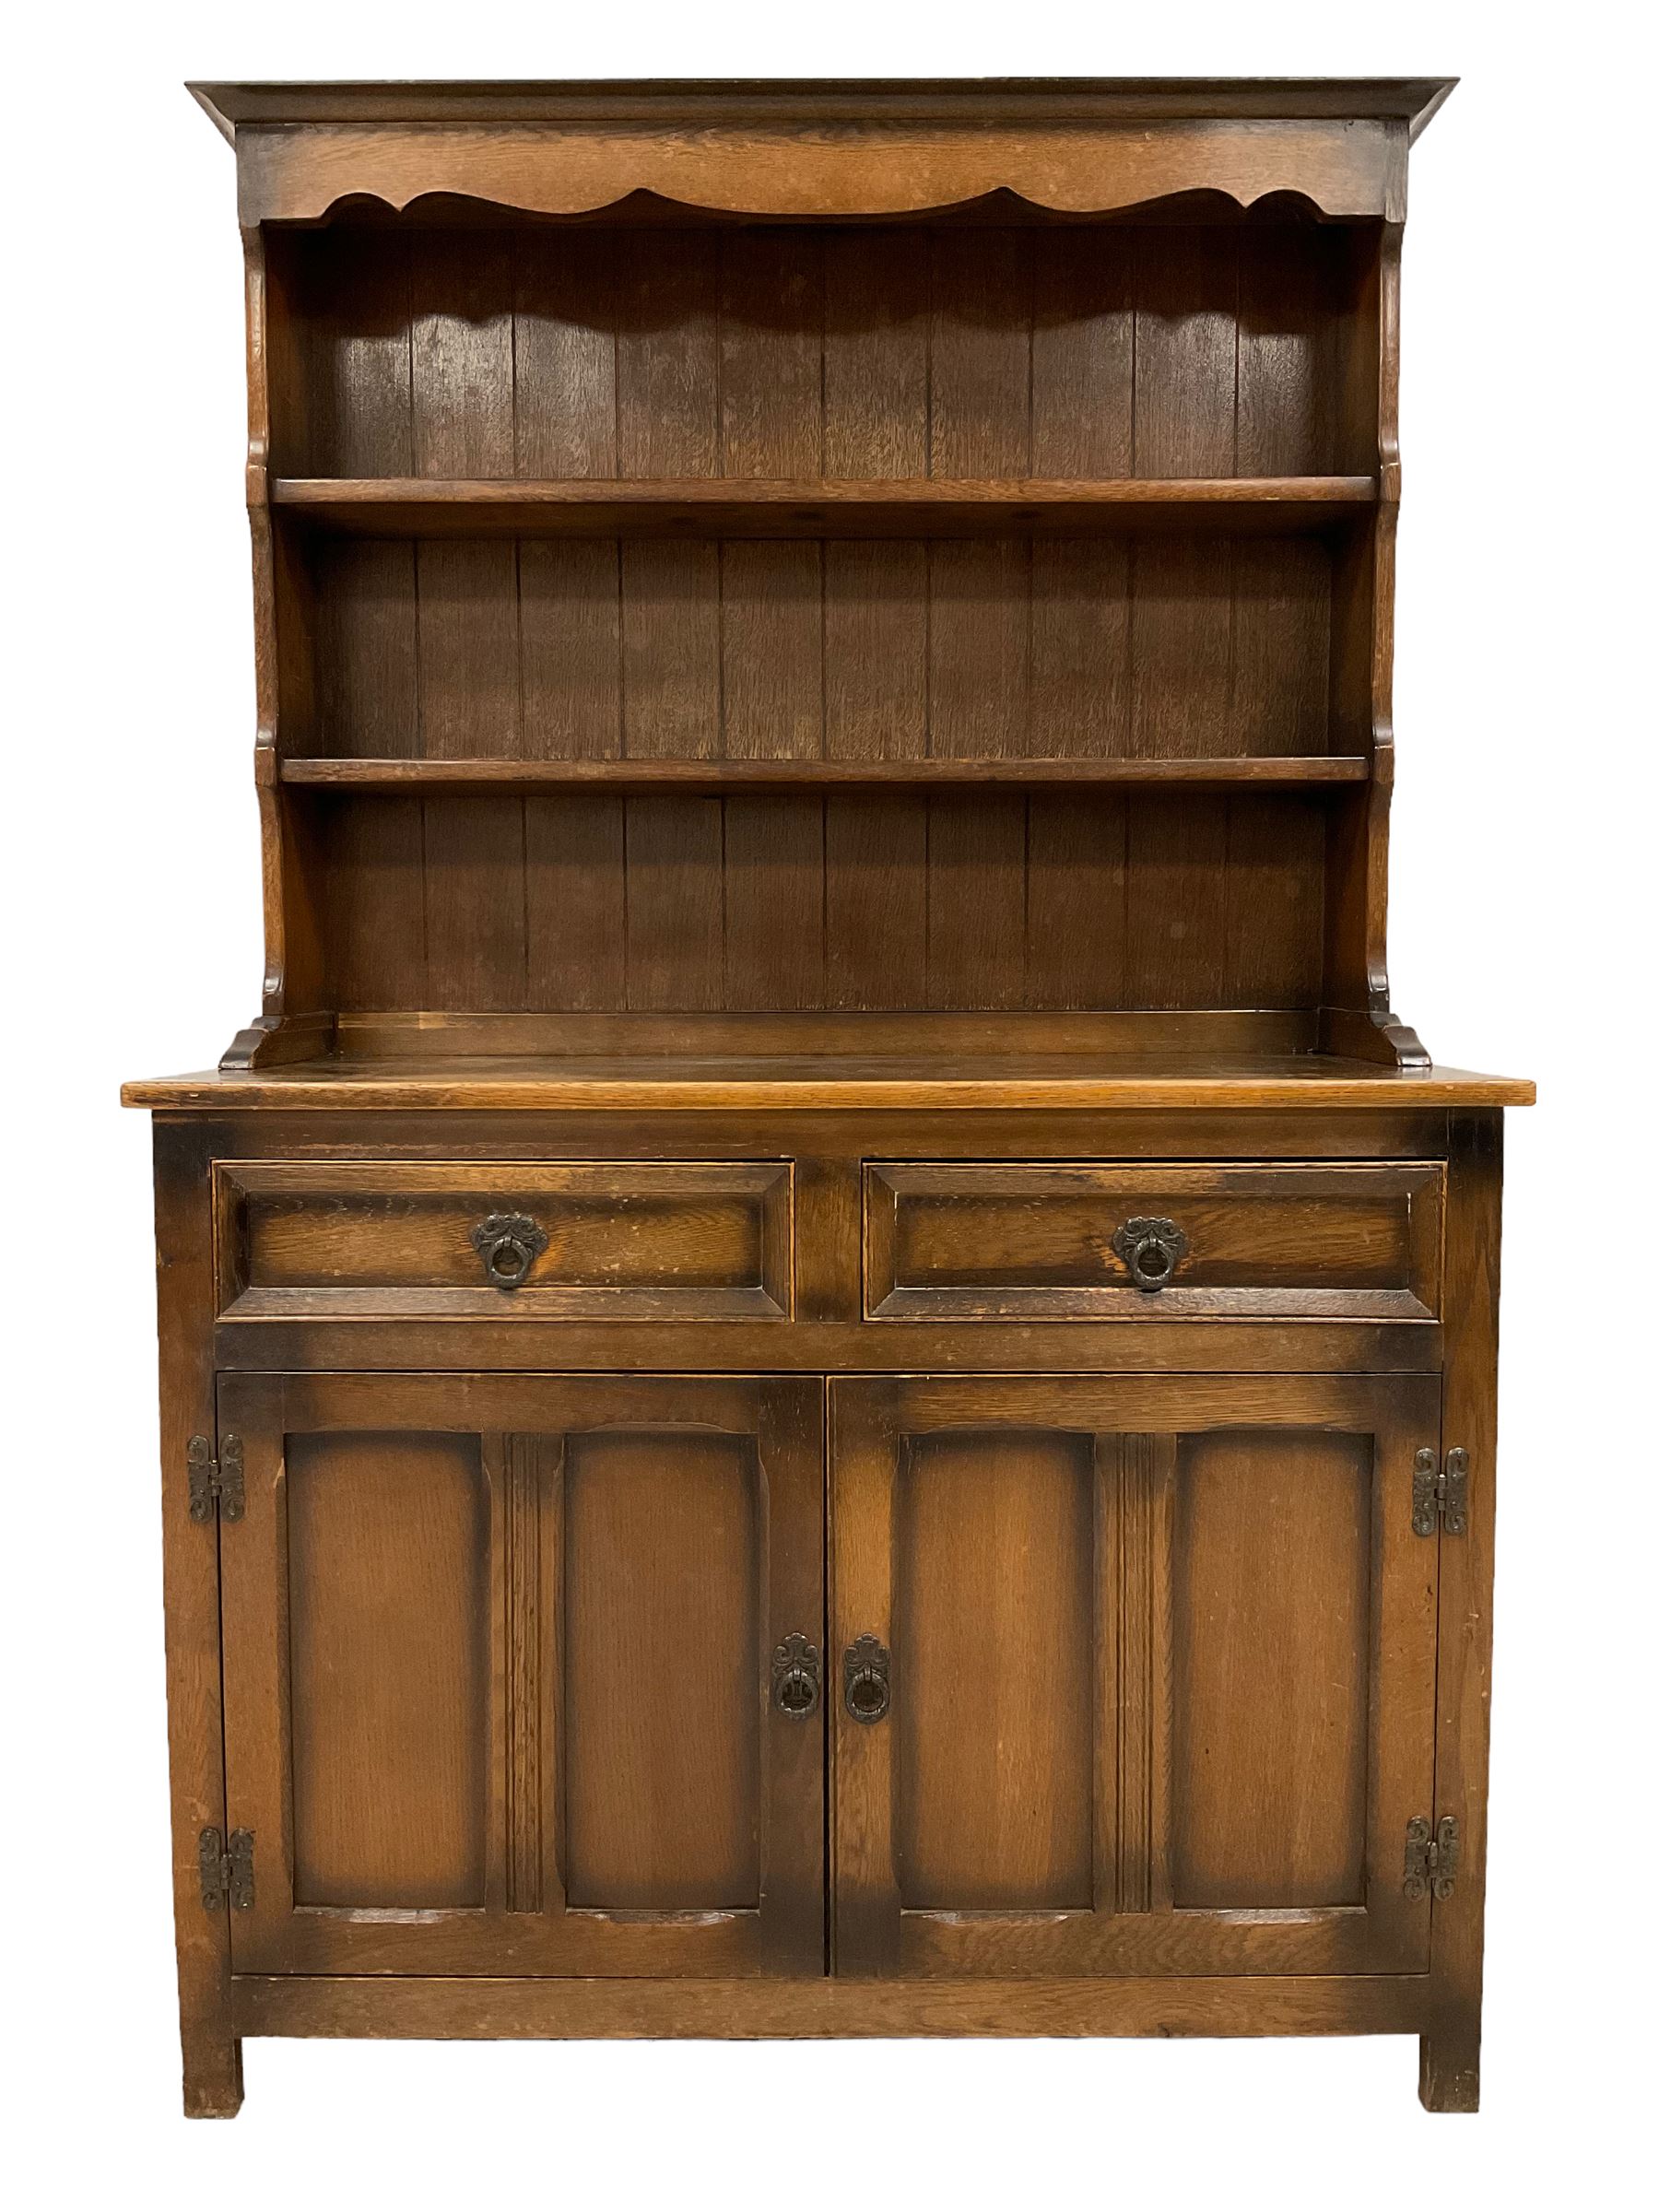 Early 20th century oak dresser